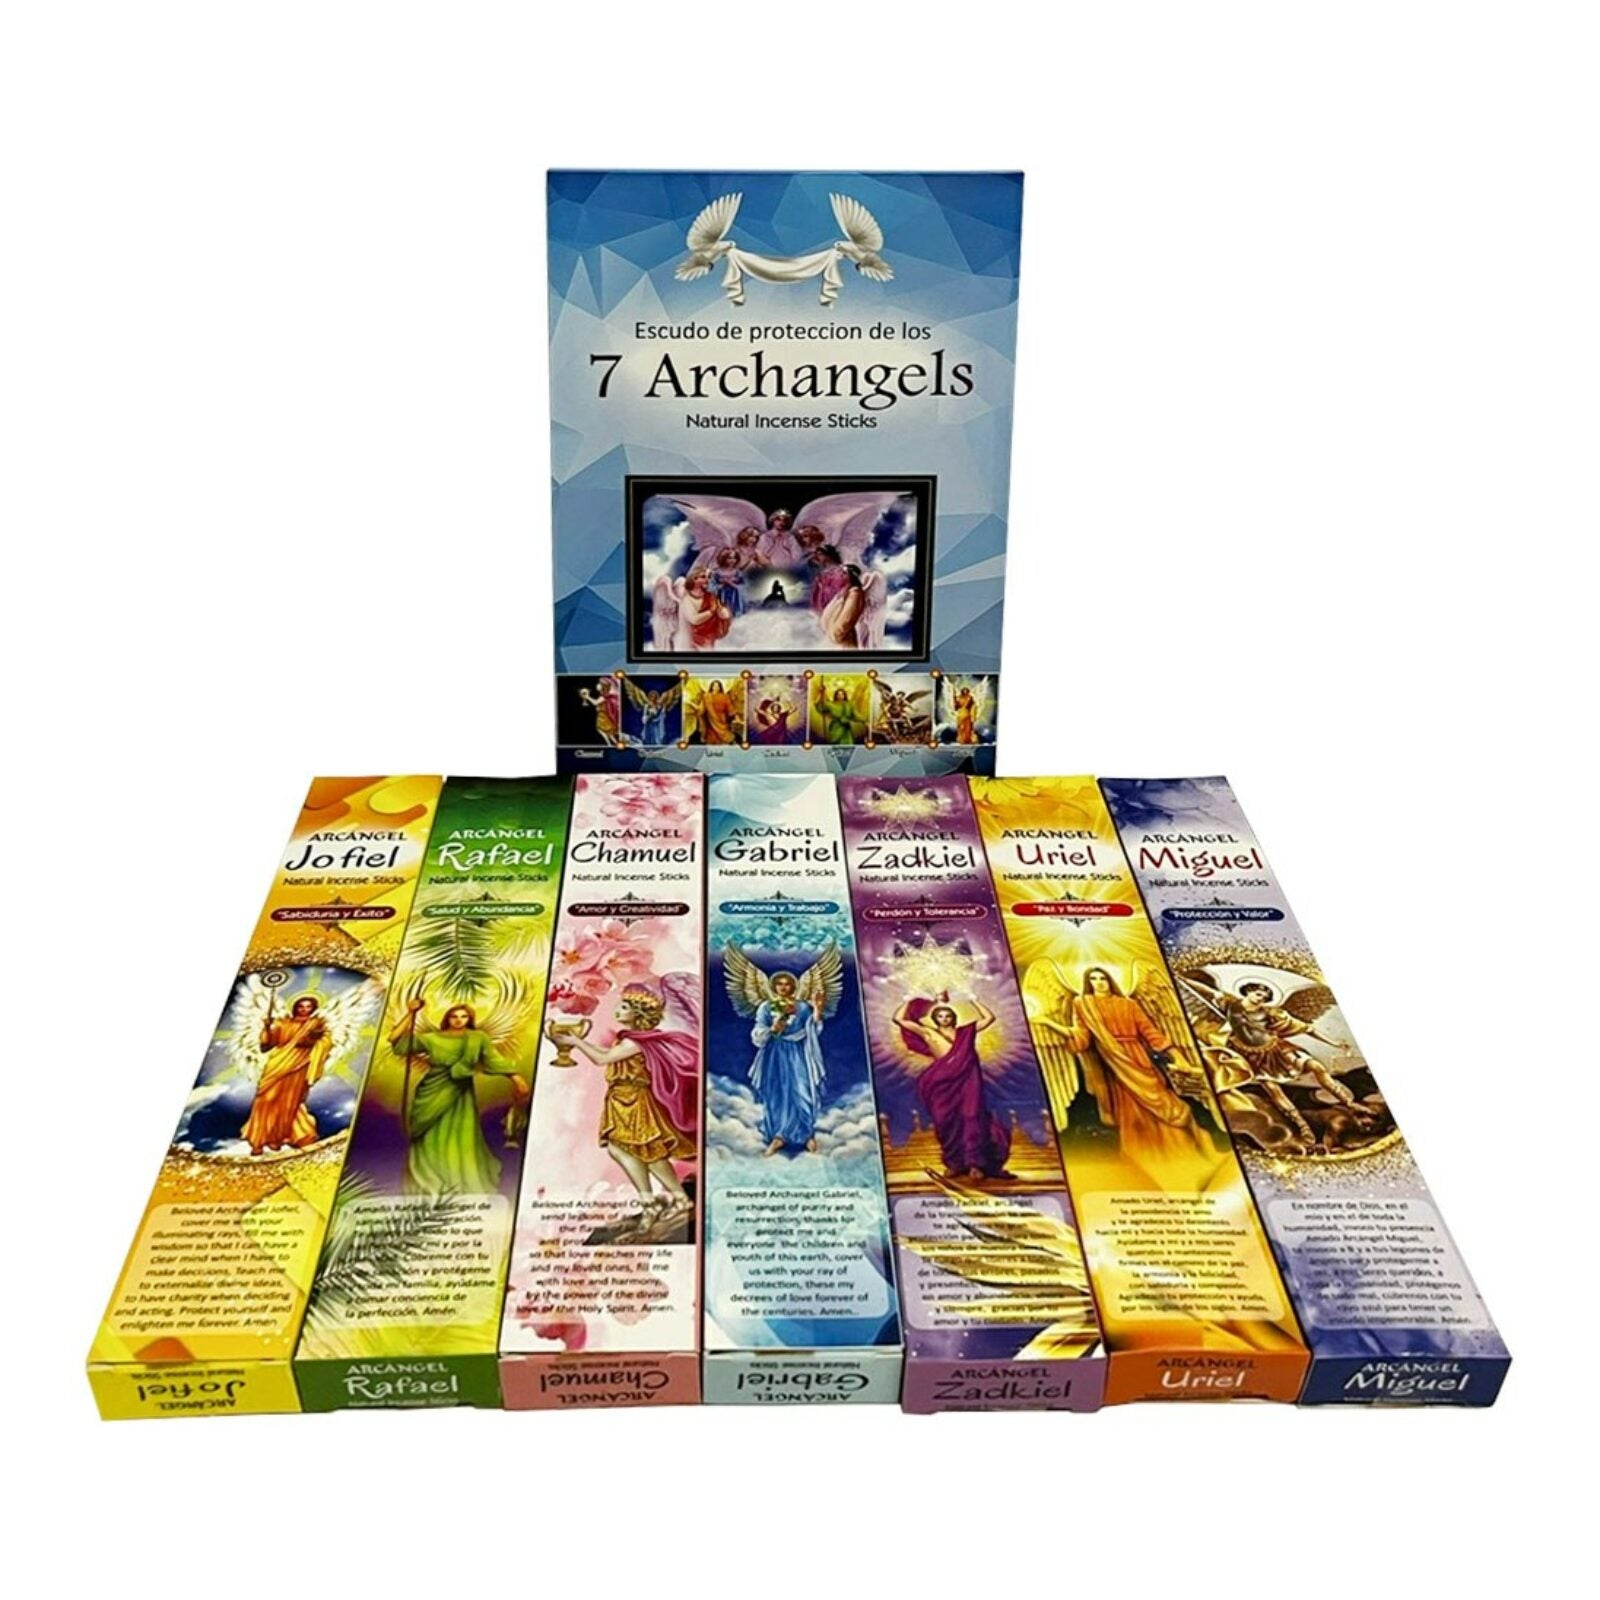 7 Archangel Natural Incense Sticks Gift Pack